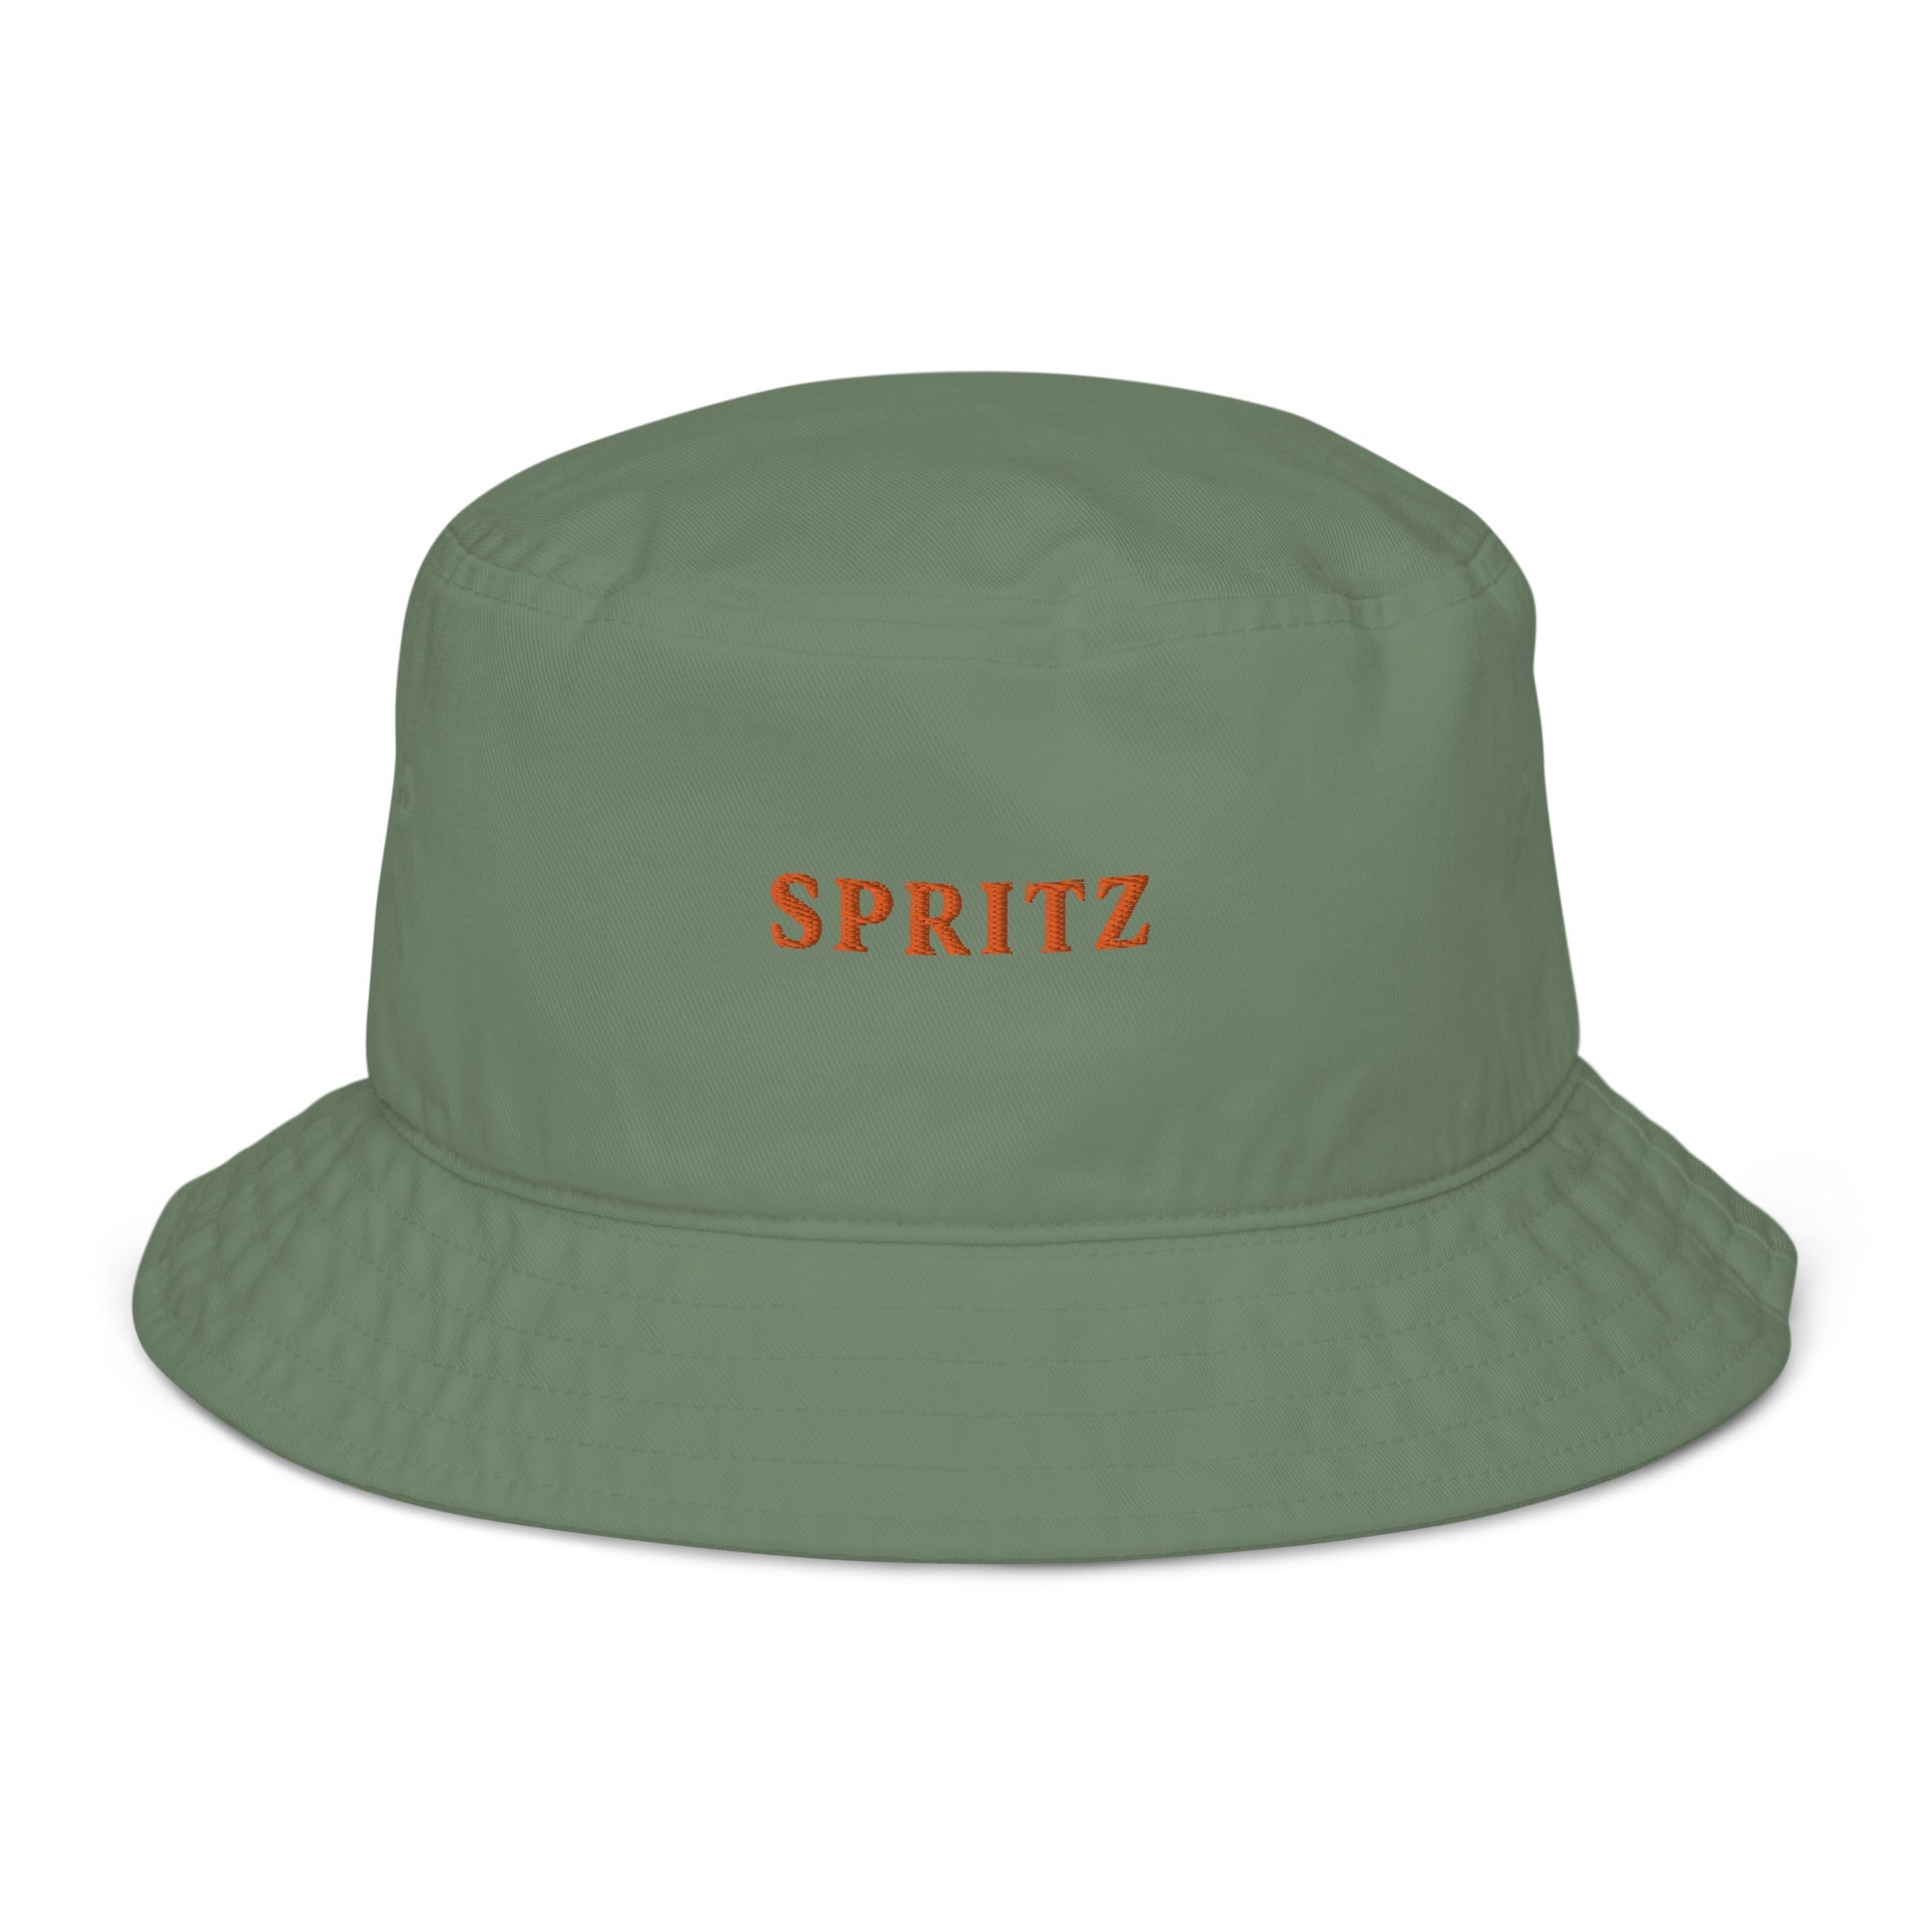 Spritz Bucket Hat - The Refined Spirit